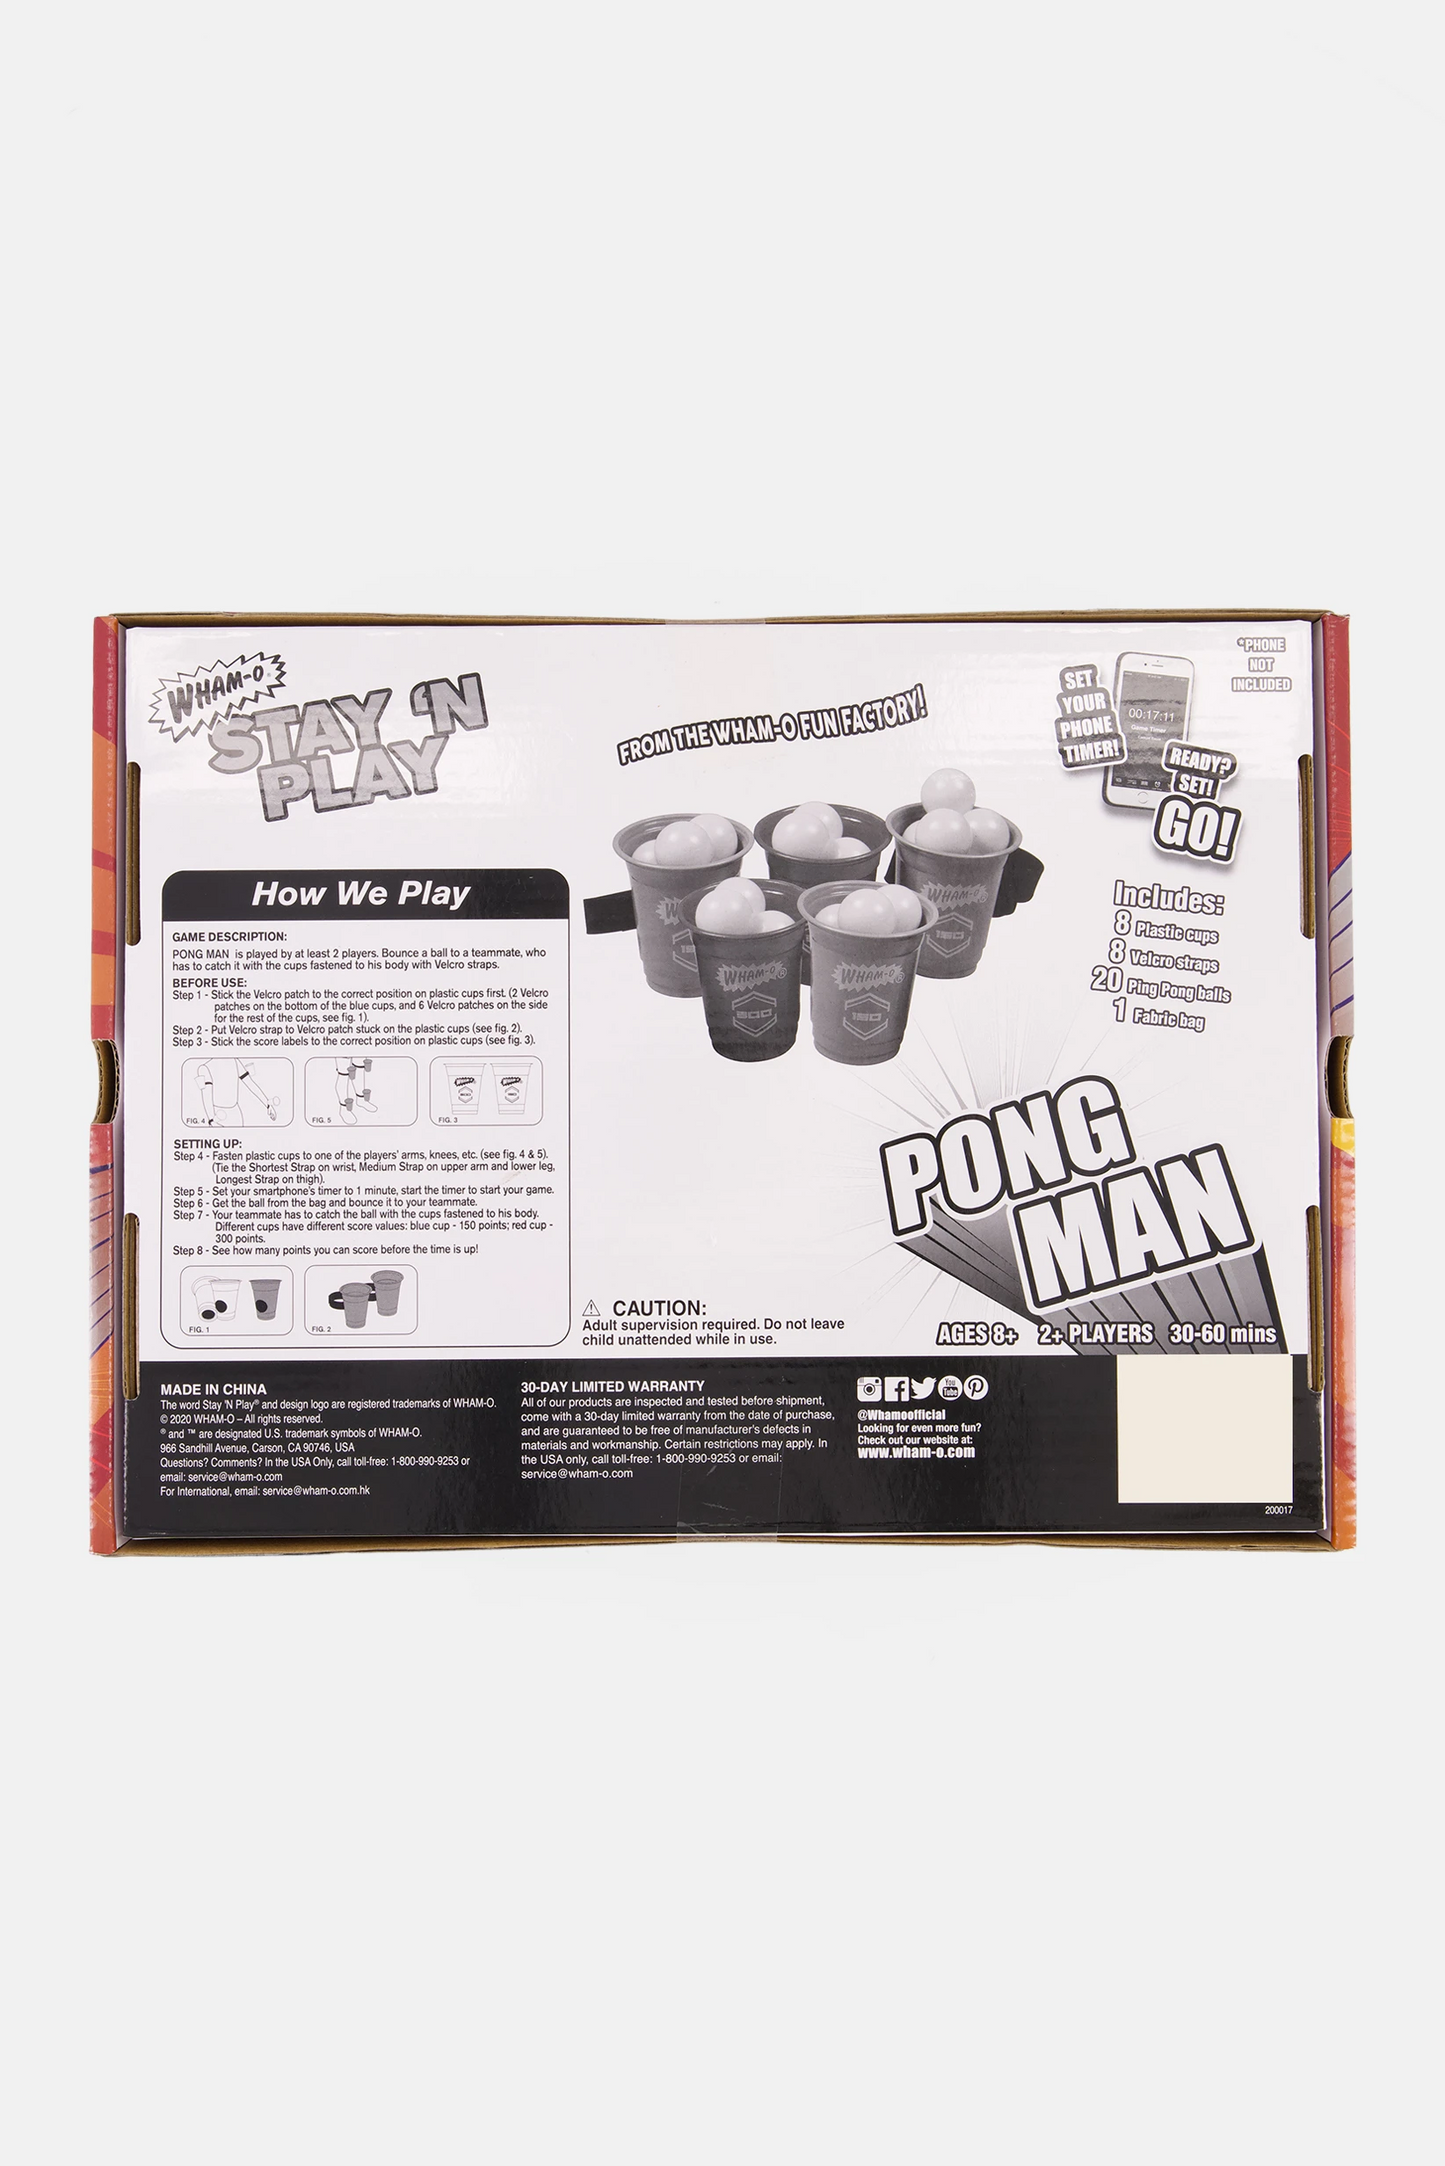 Stay N Play Pong Man